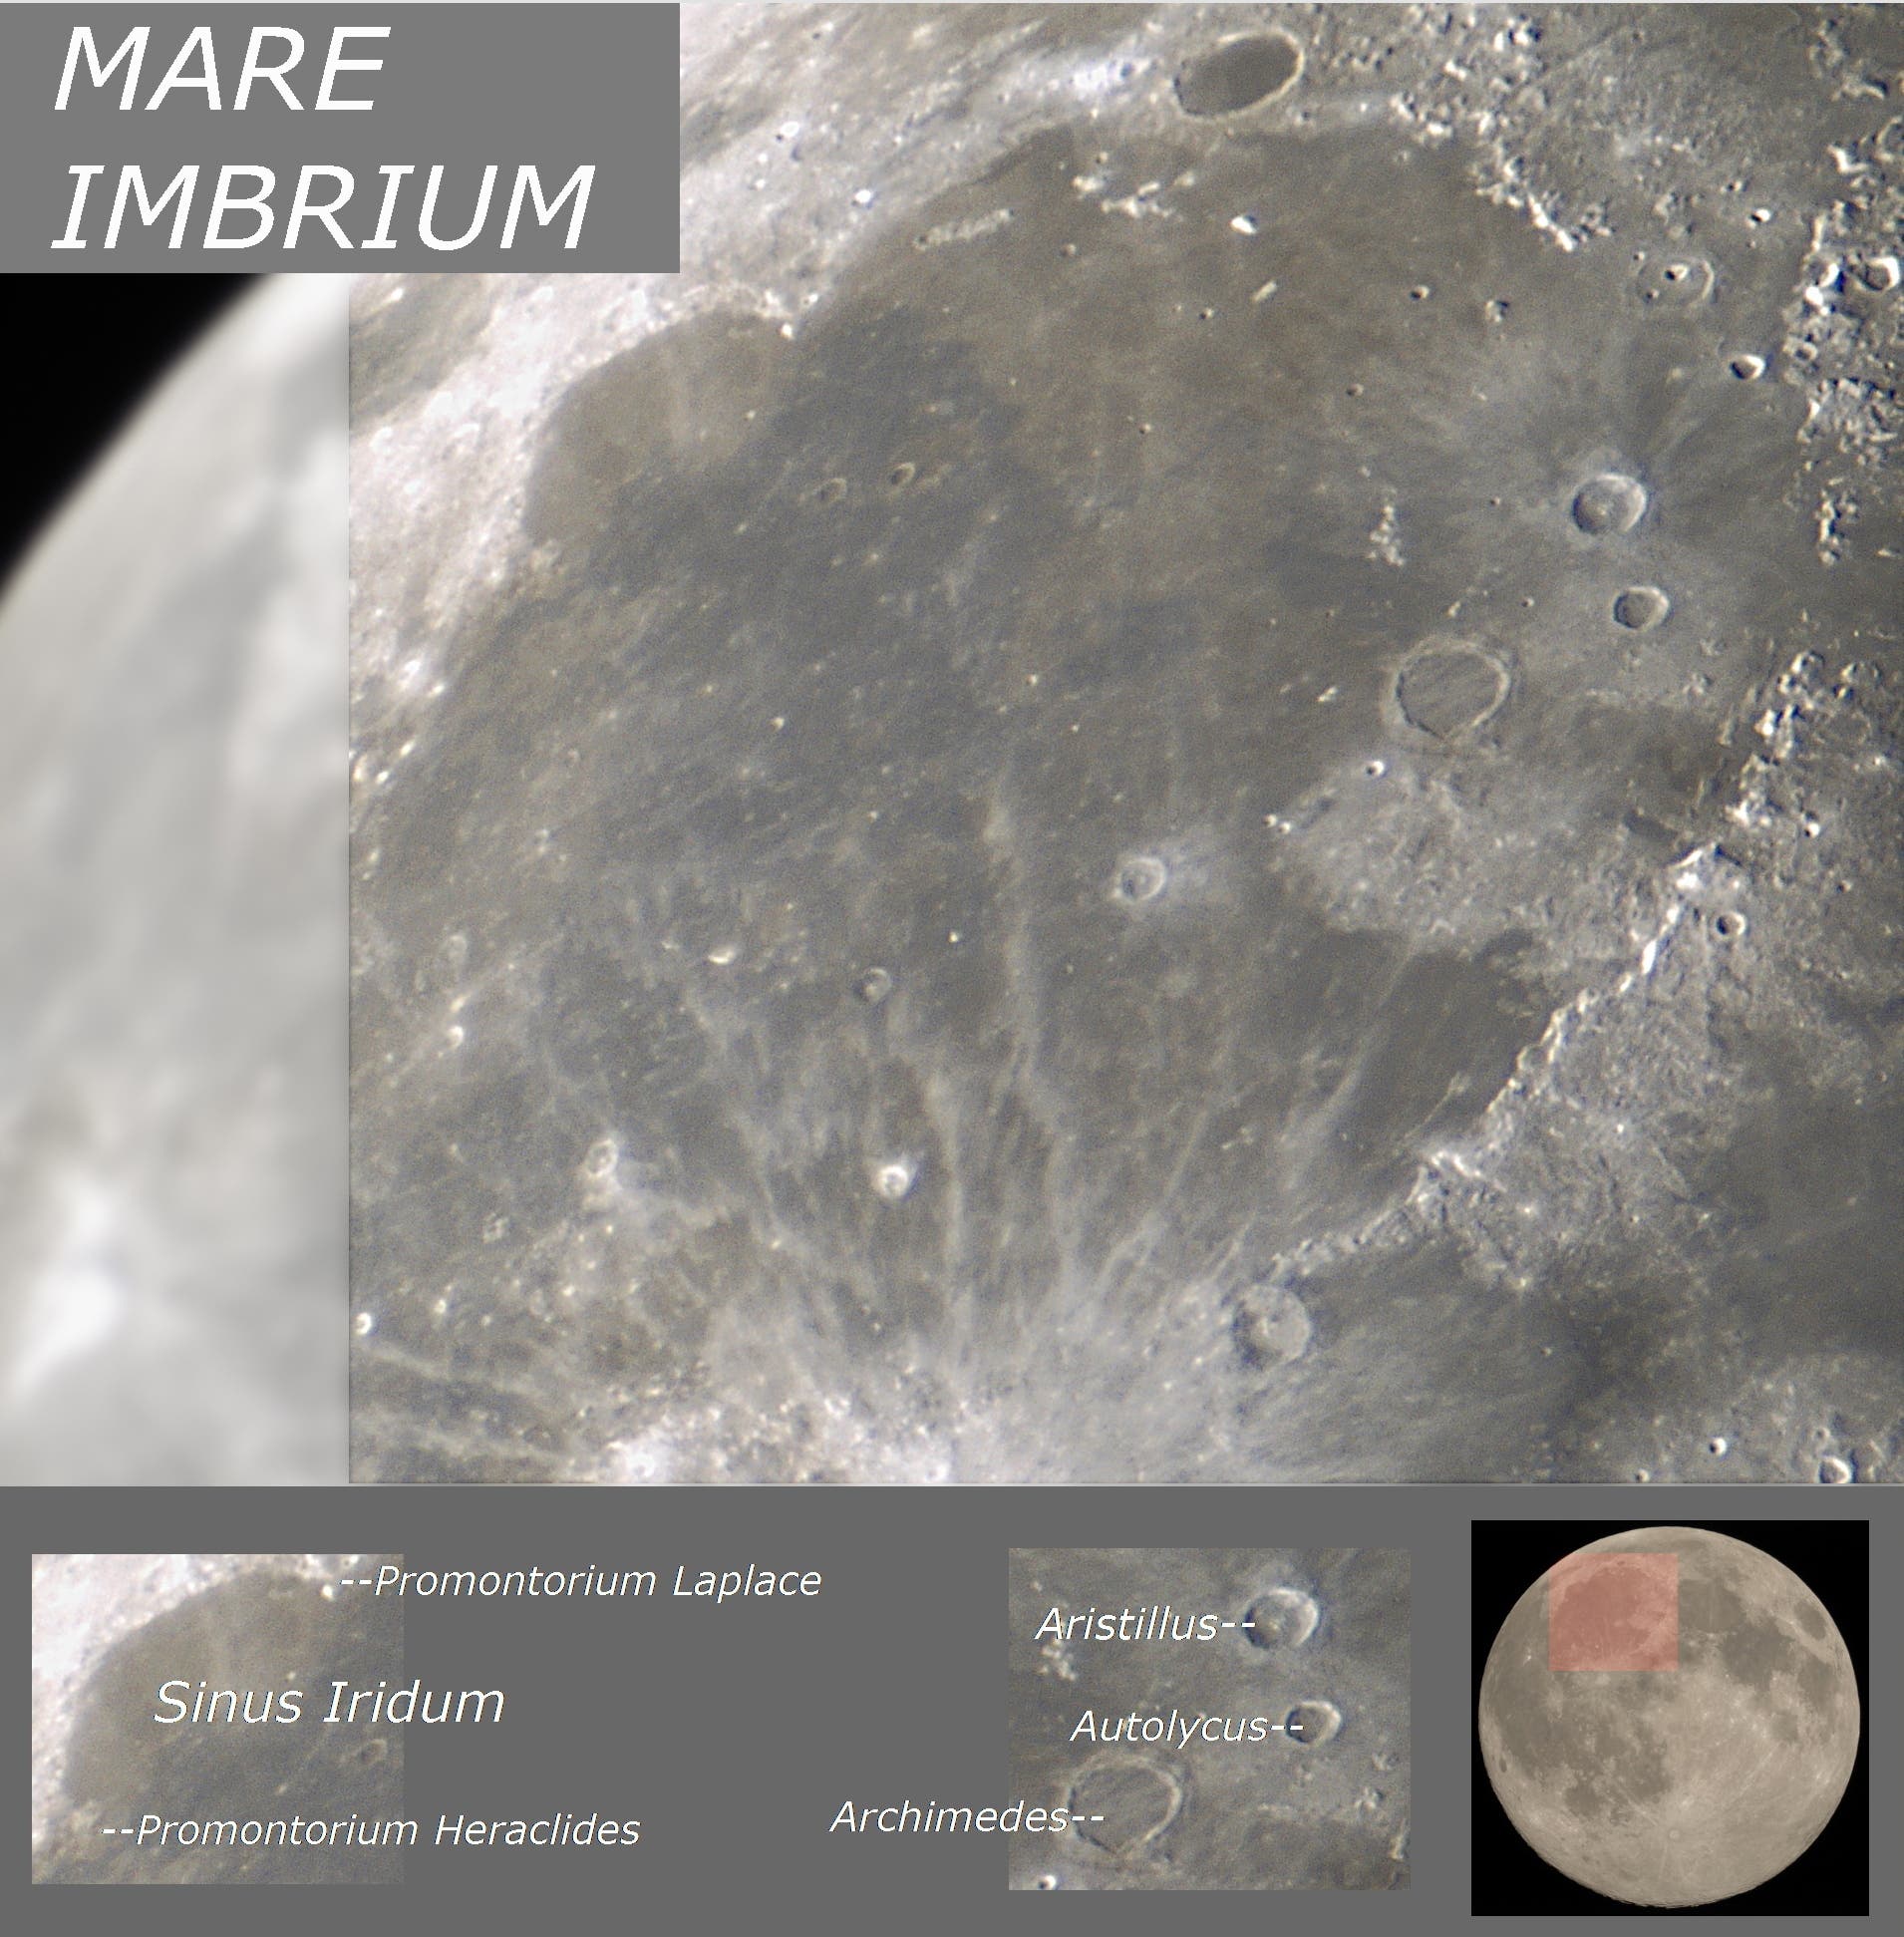 Der farbige Mare-Imbrium-Boden